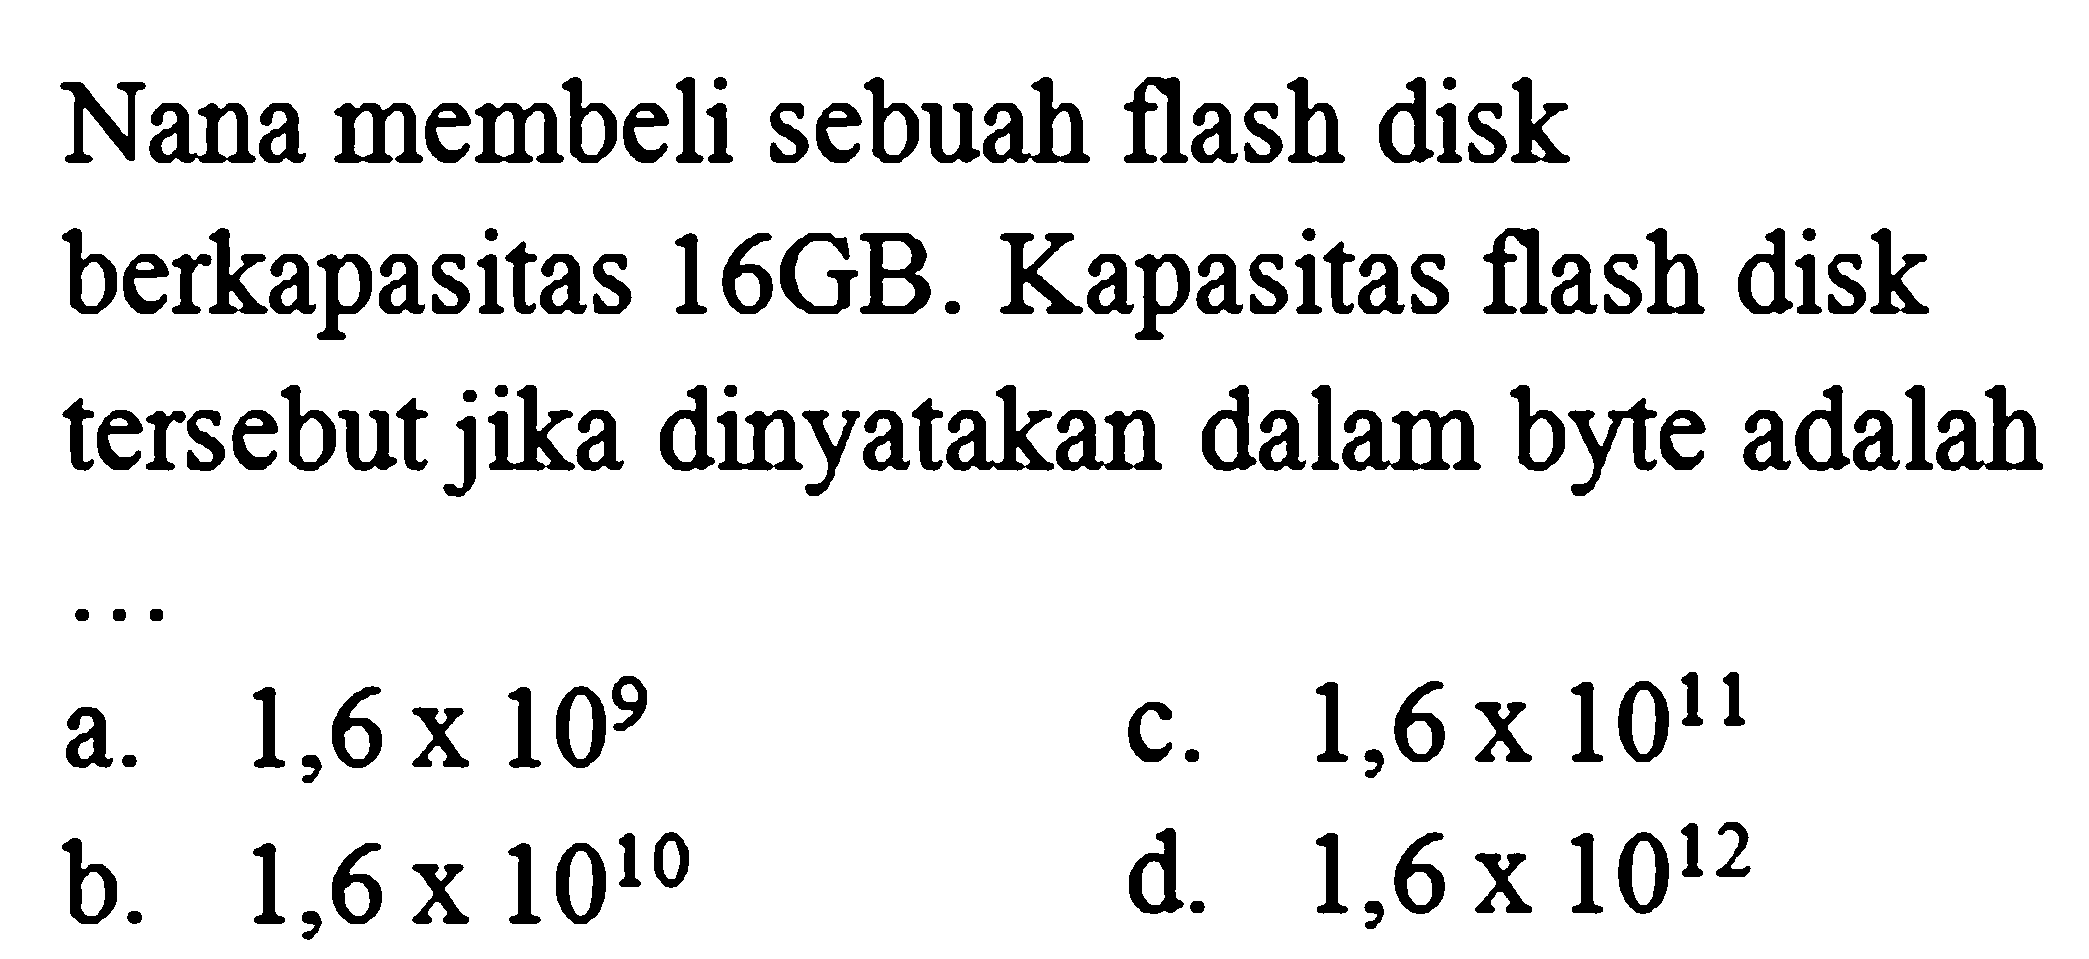 Nana membeli sebuah flash disk berkapasitas 16GB. Kapasitas flash disk tersebut jika dinyatakan dalam byte adalah... 